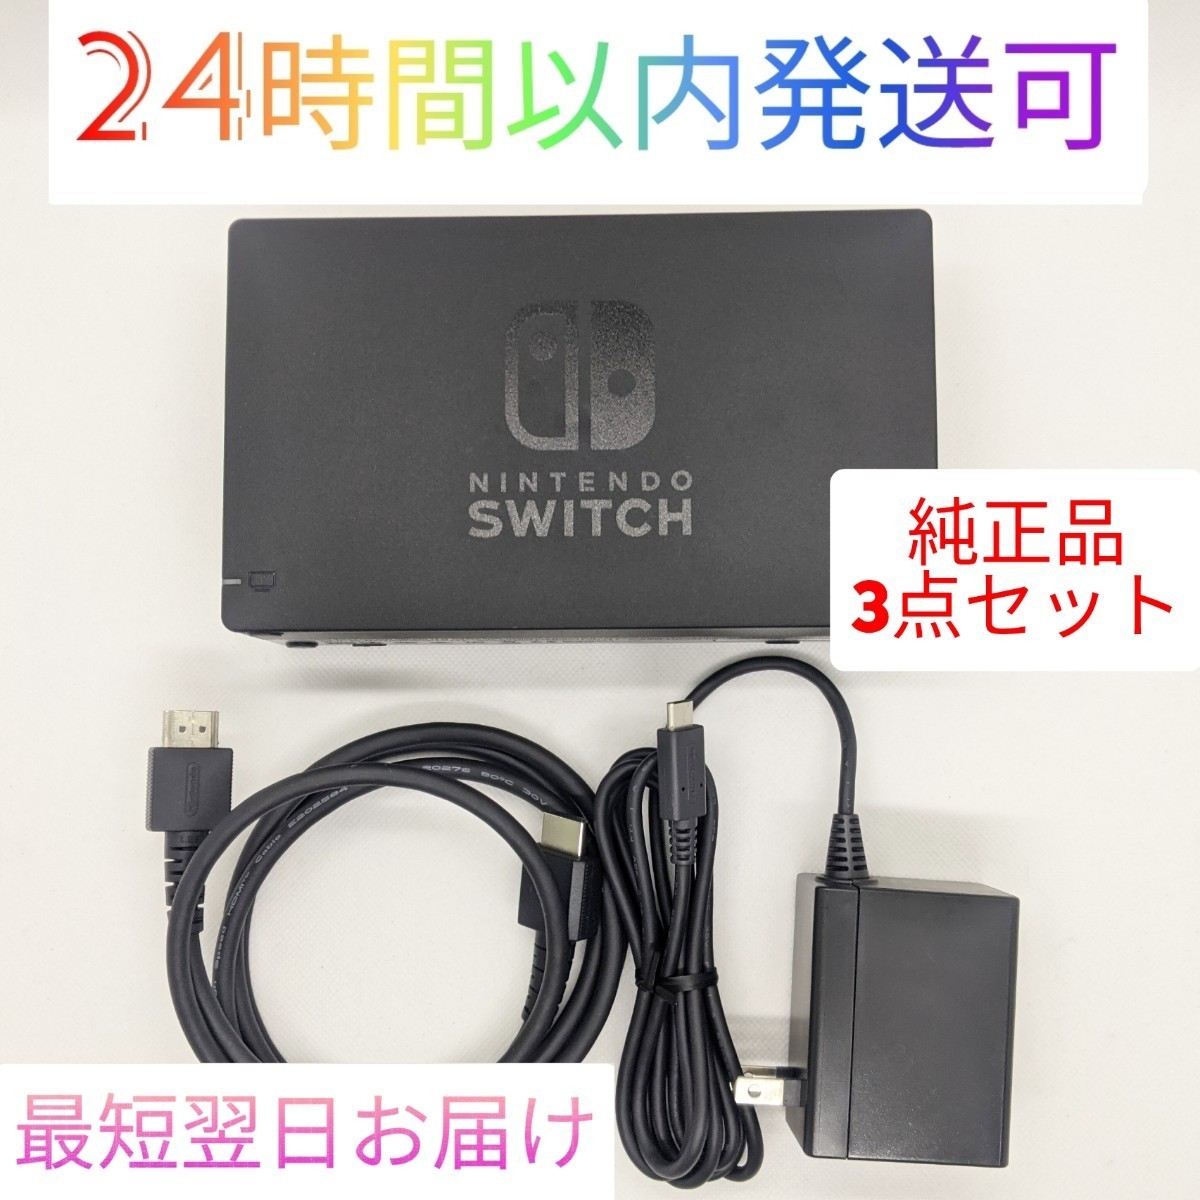 12dv【中古】純正品 Nintendo Switch ドック ACアダプター HDMIケーブル セット 最短翌日お届け